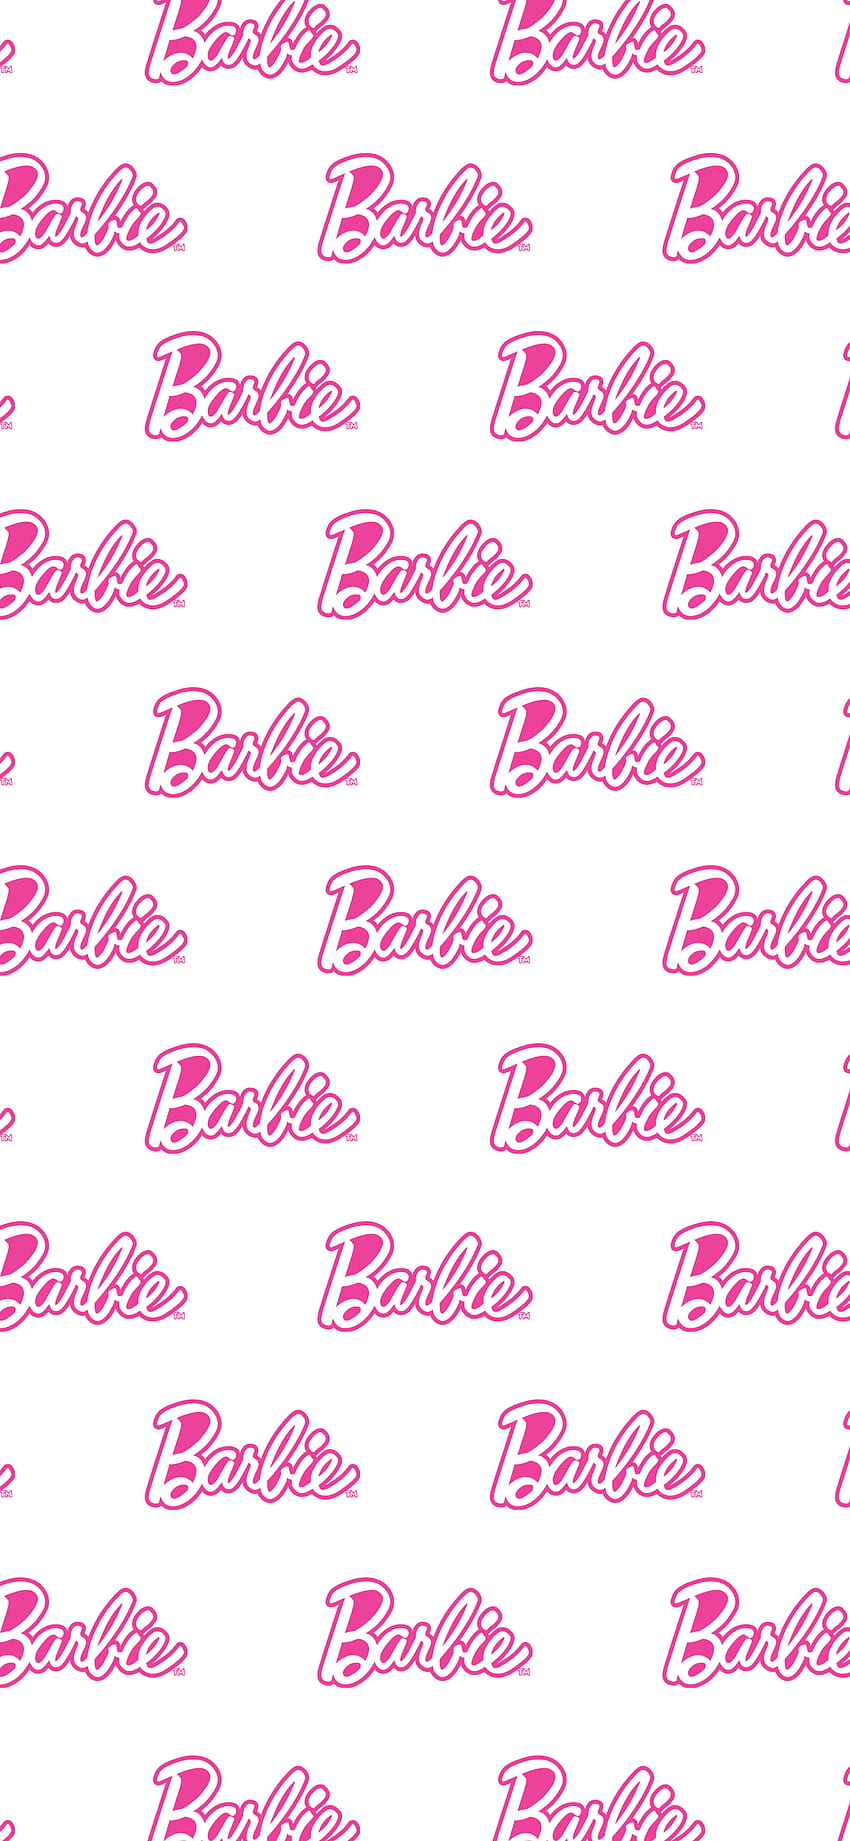 Barbie Wallpapers - Top 25 Best Barbie Backgrounds Download